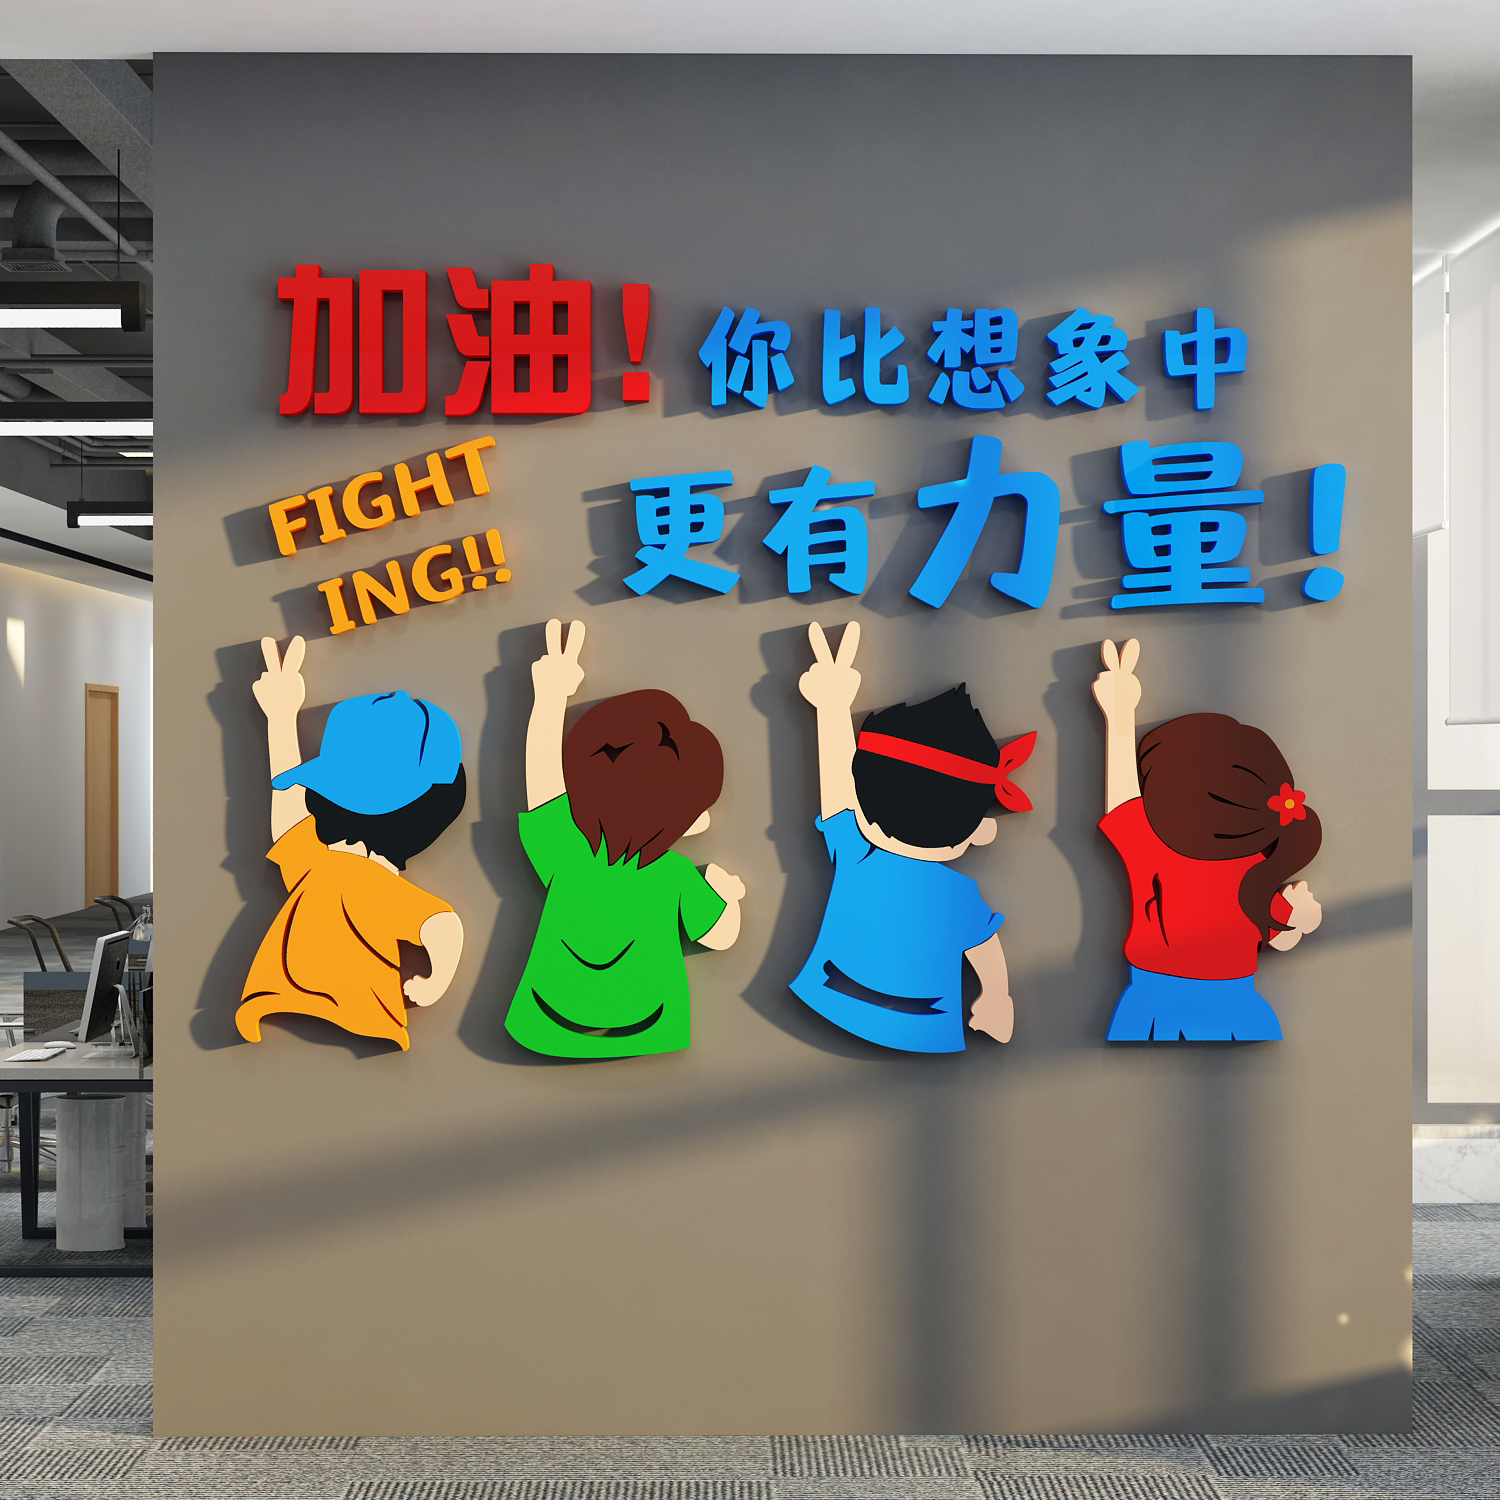 办公司室墙面装饰布置企业文化设计会议进门形象背景励志标语贴画